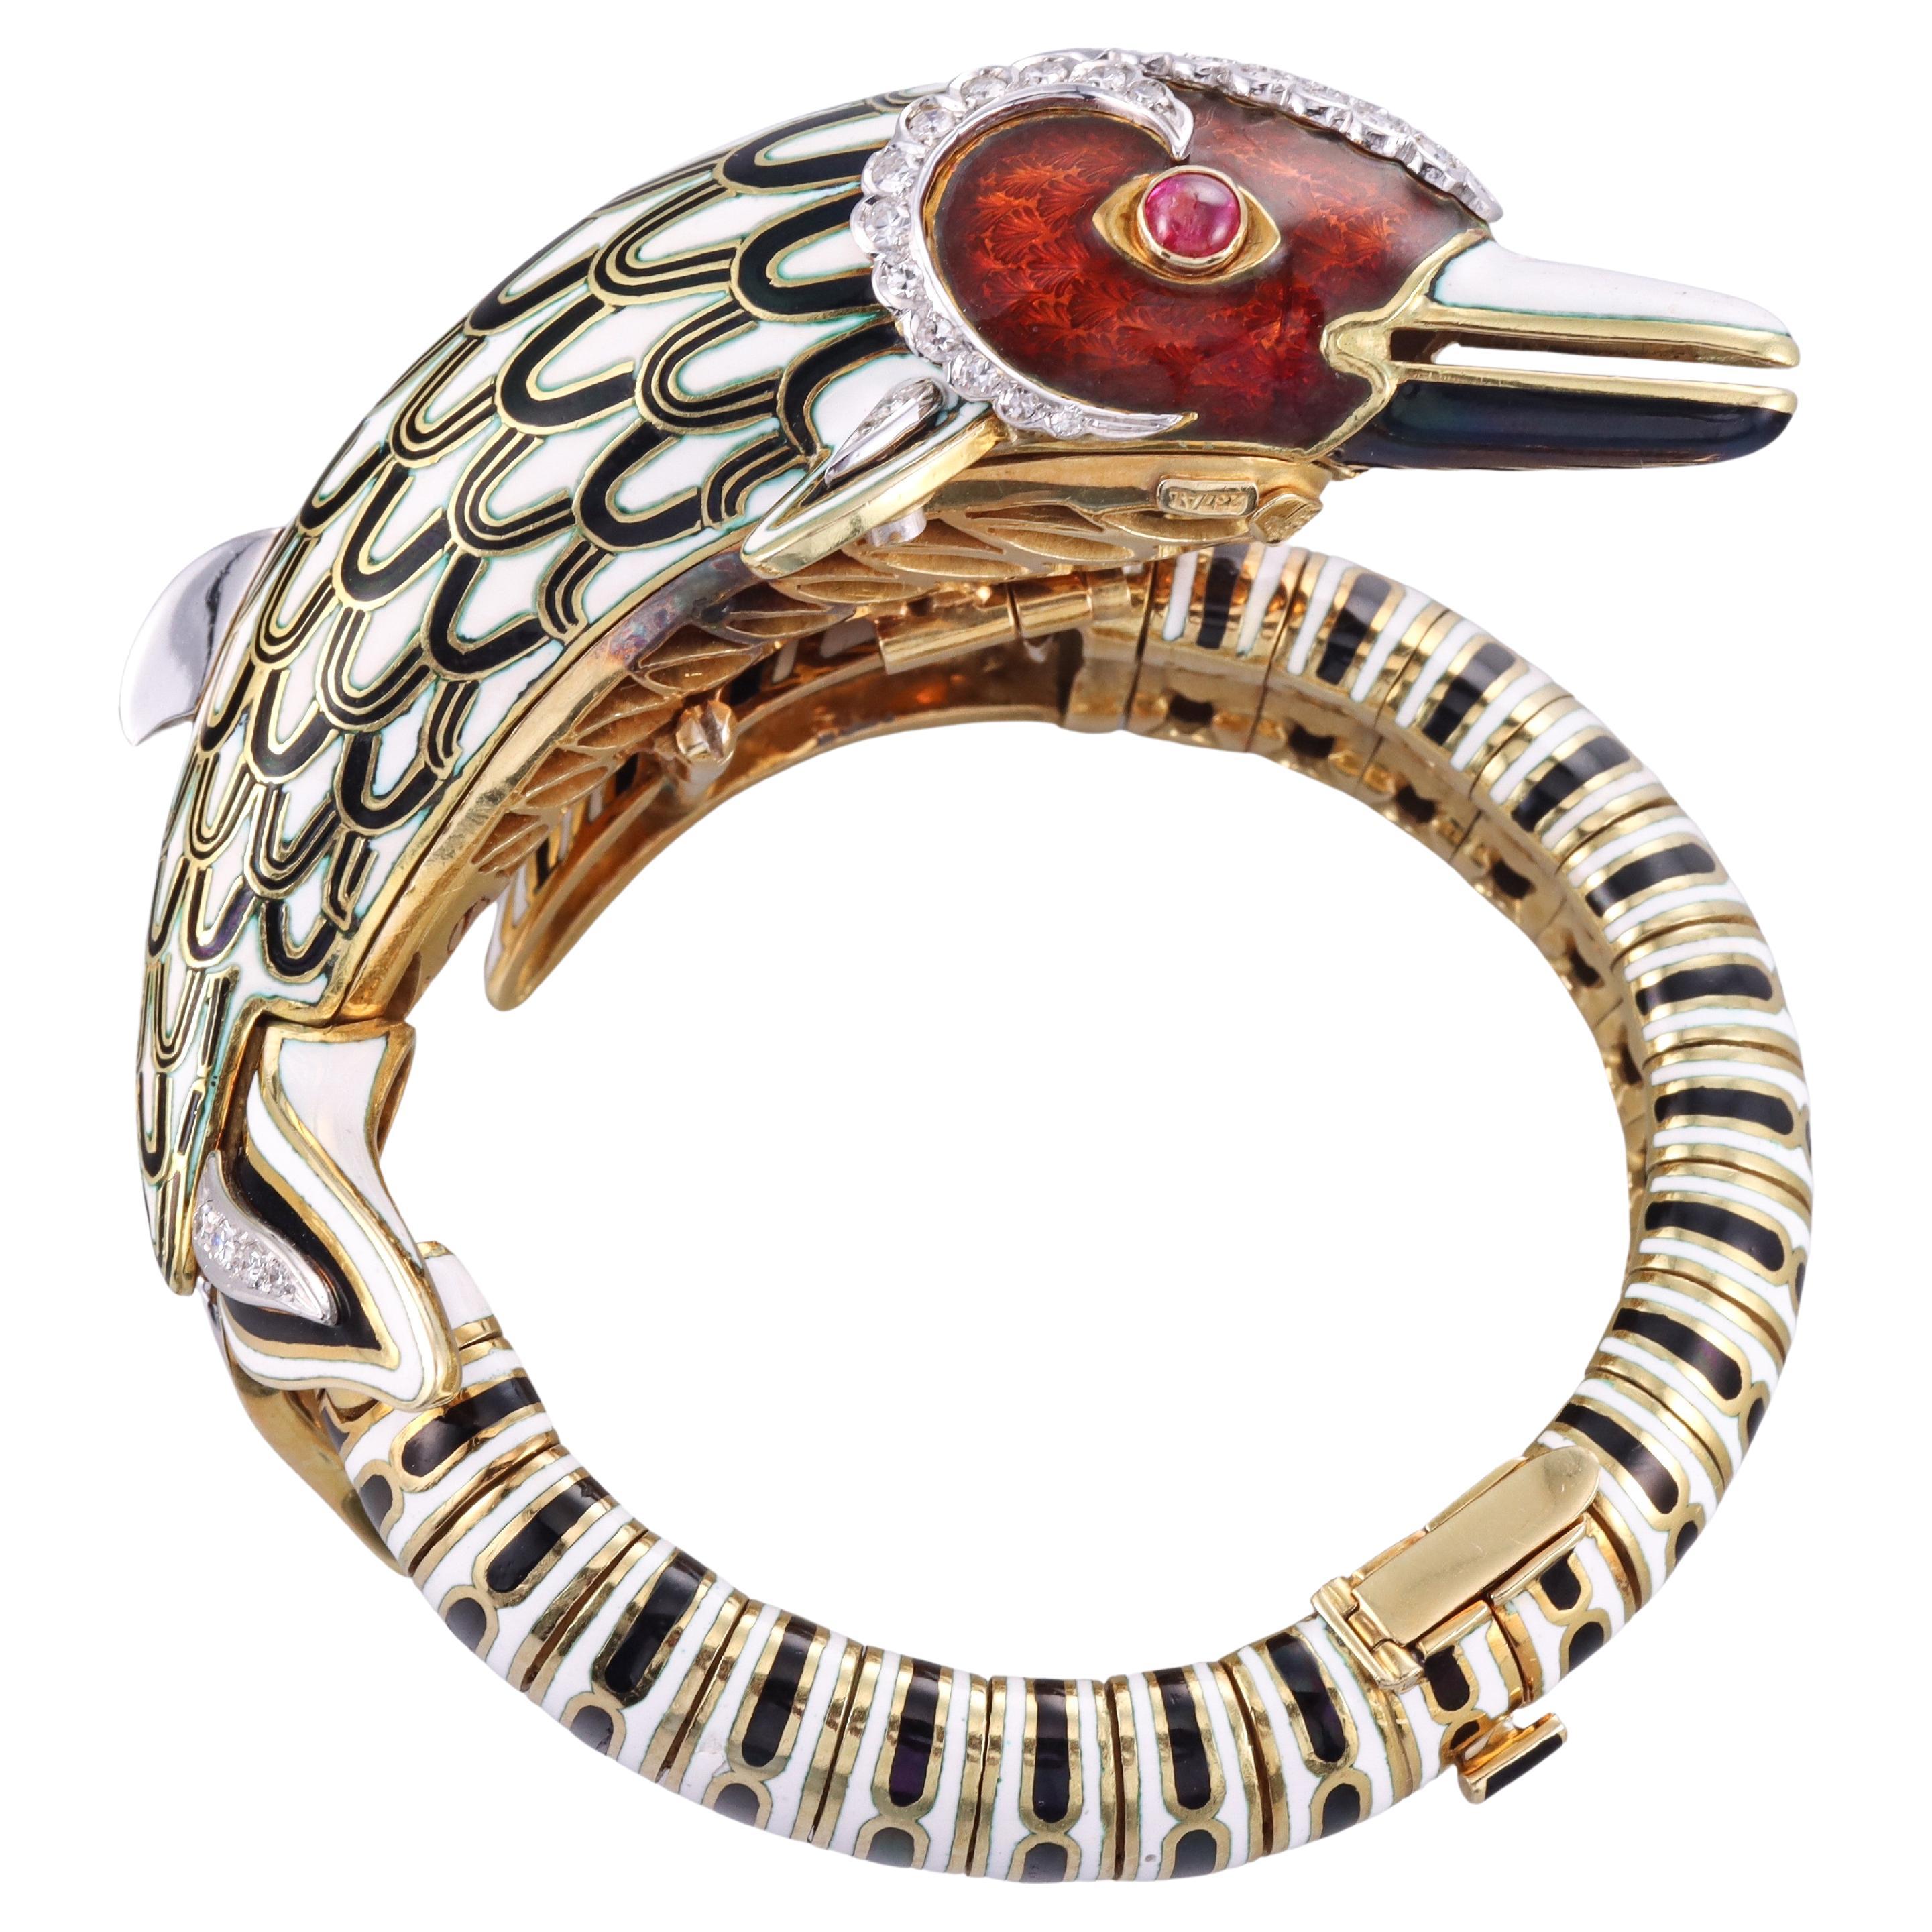 Beeindruckendes Delphin-Armband von Frascarolo, Emaille, Diamant, Rubin, Gold